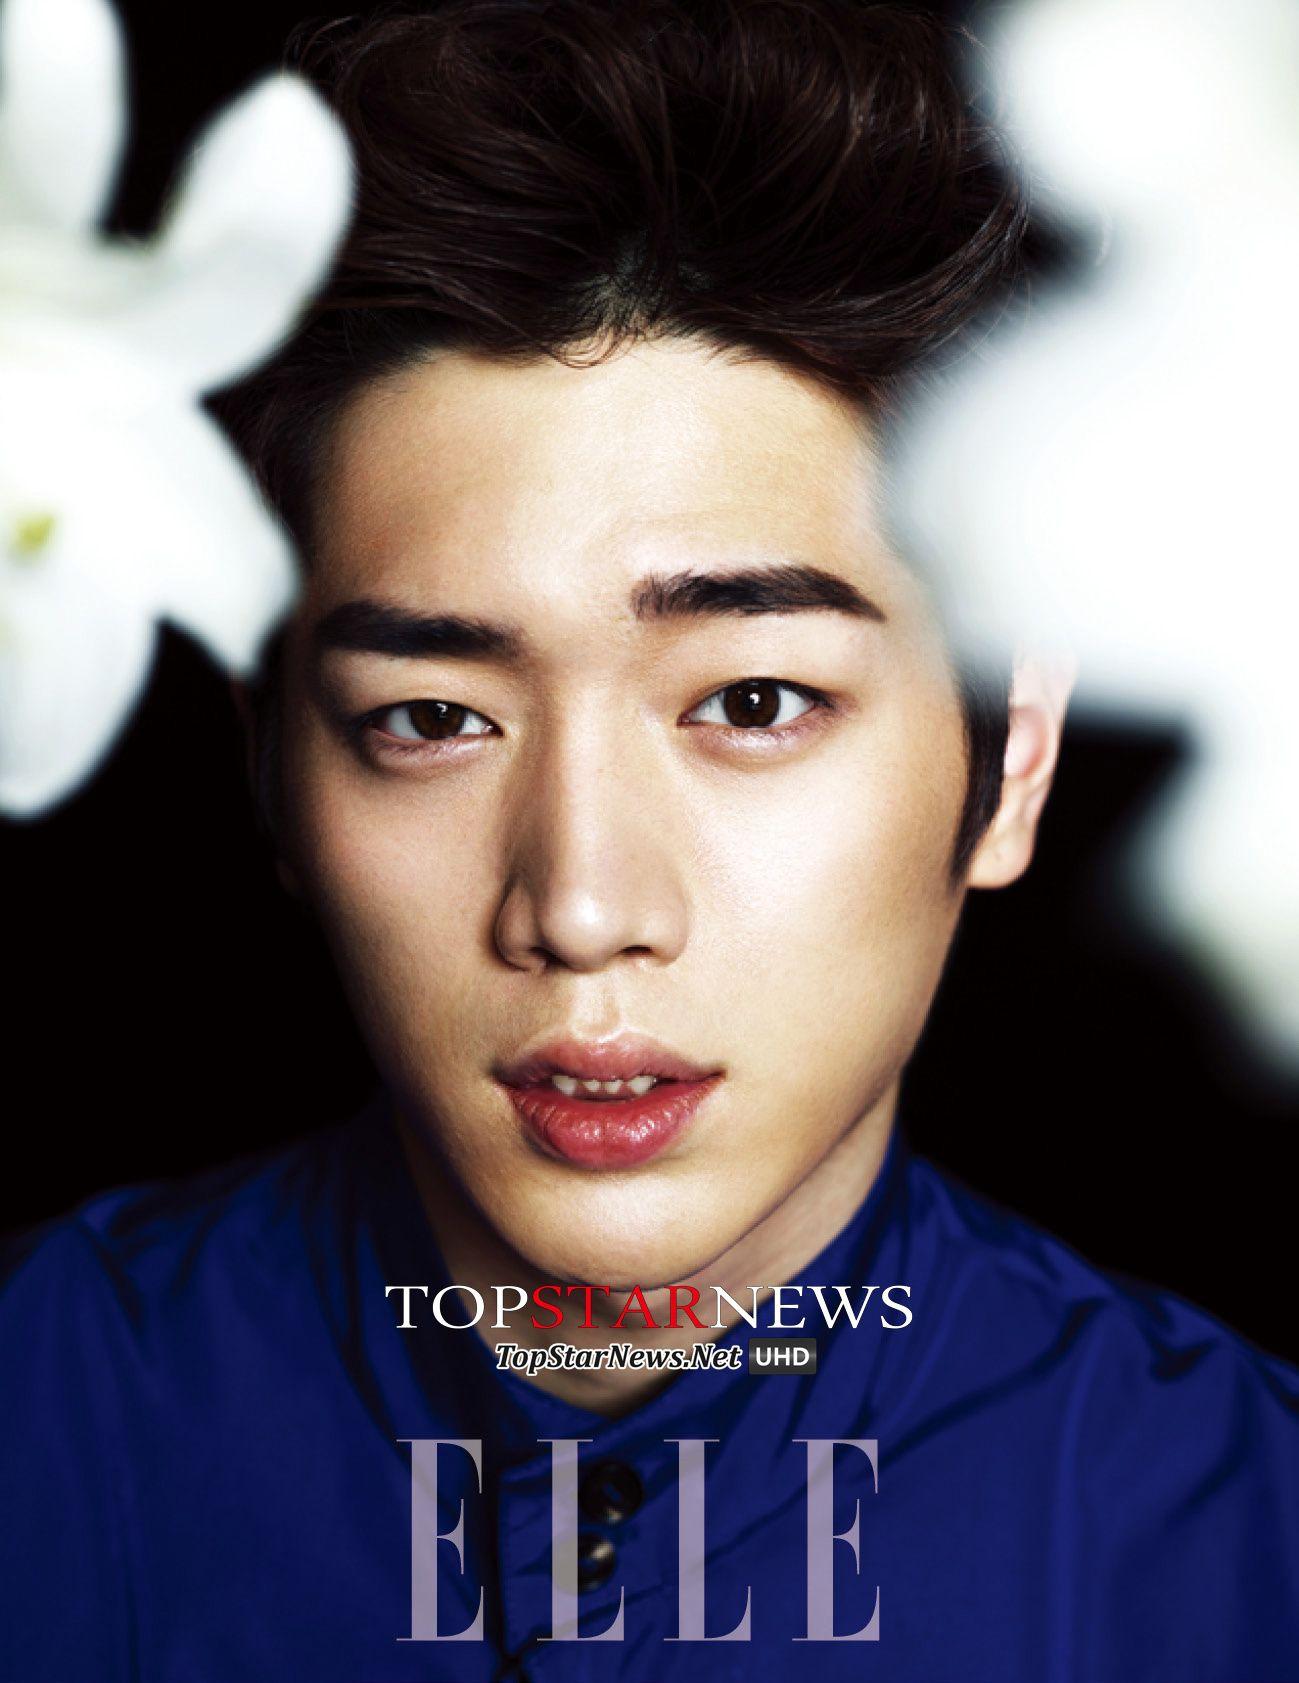 Seo Kang Joon Android IPhone Wallpaper KPOP Image